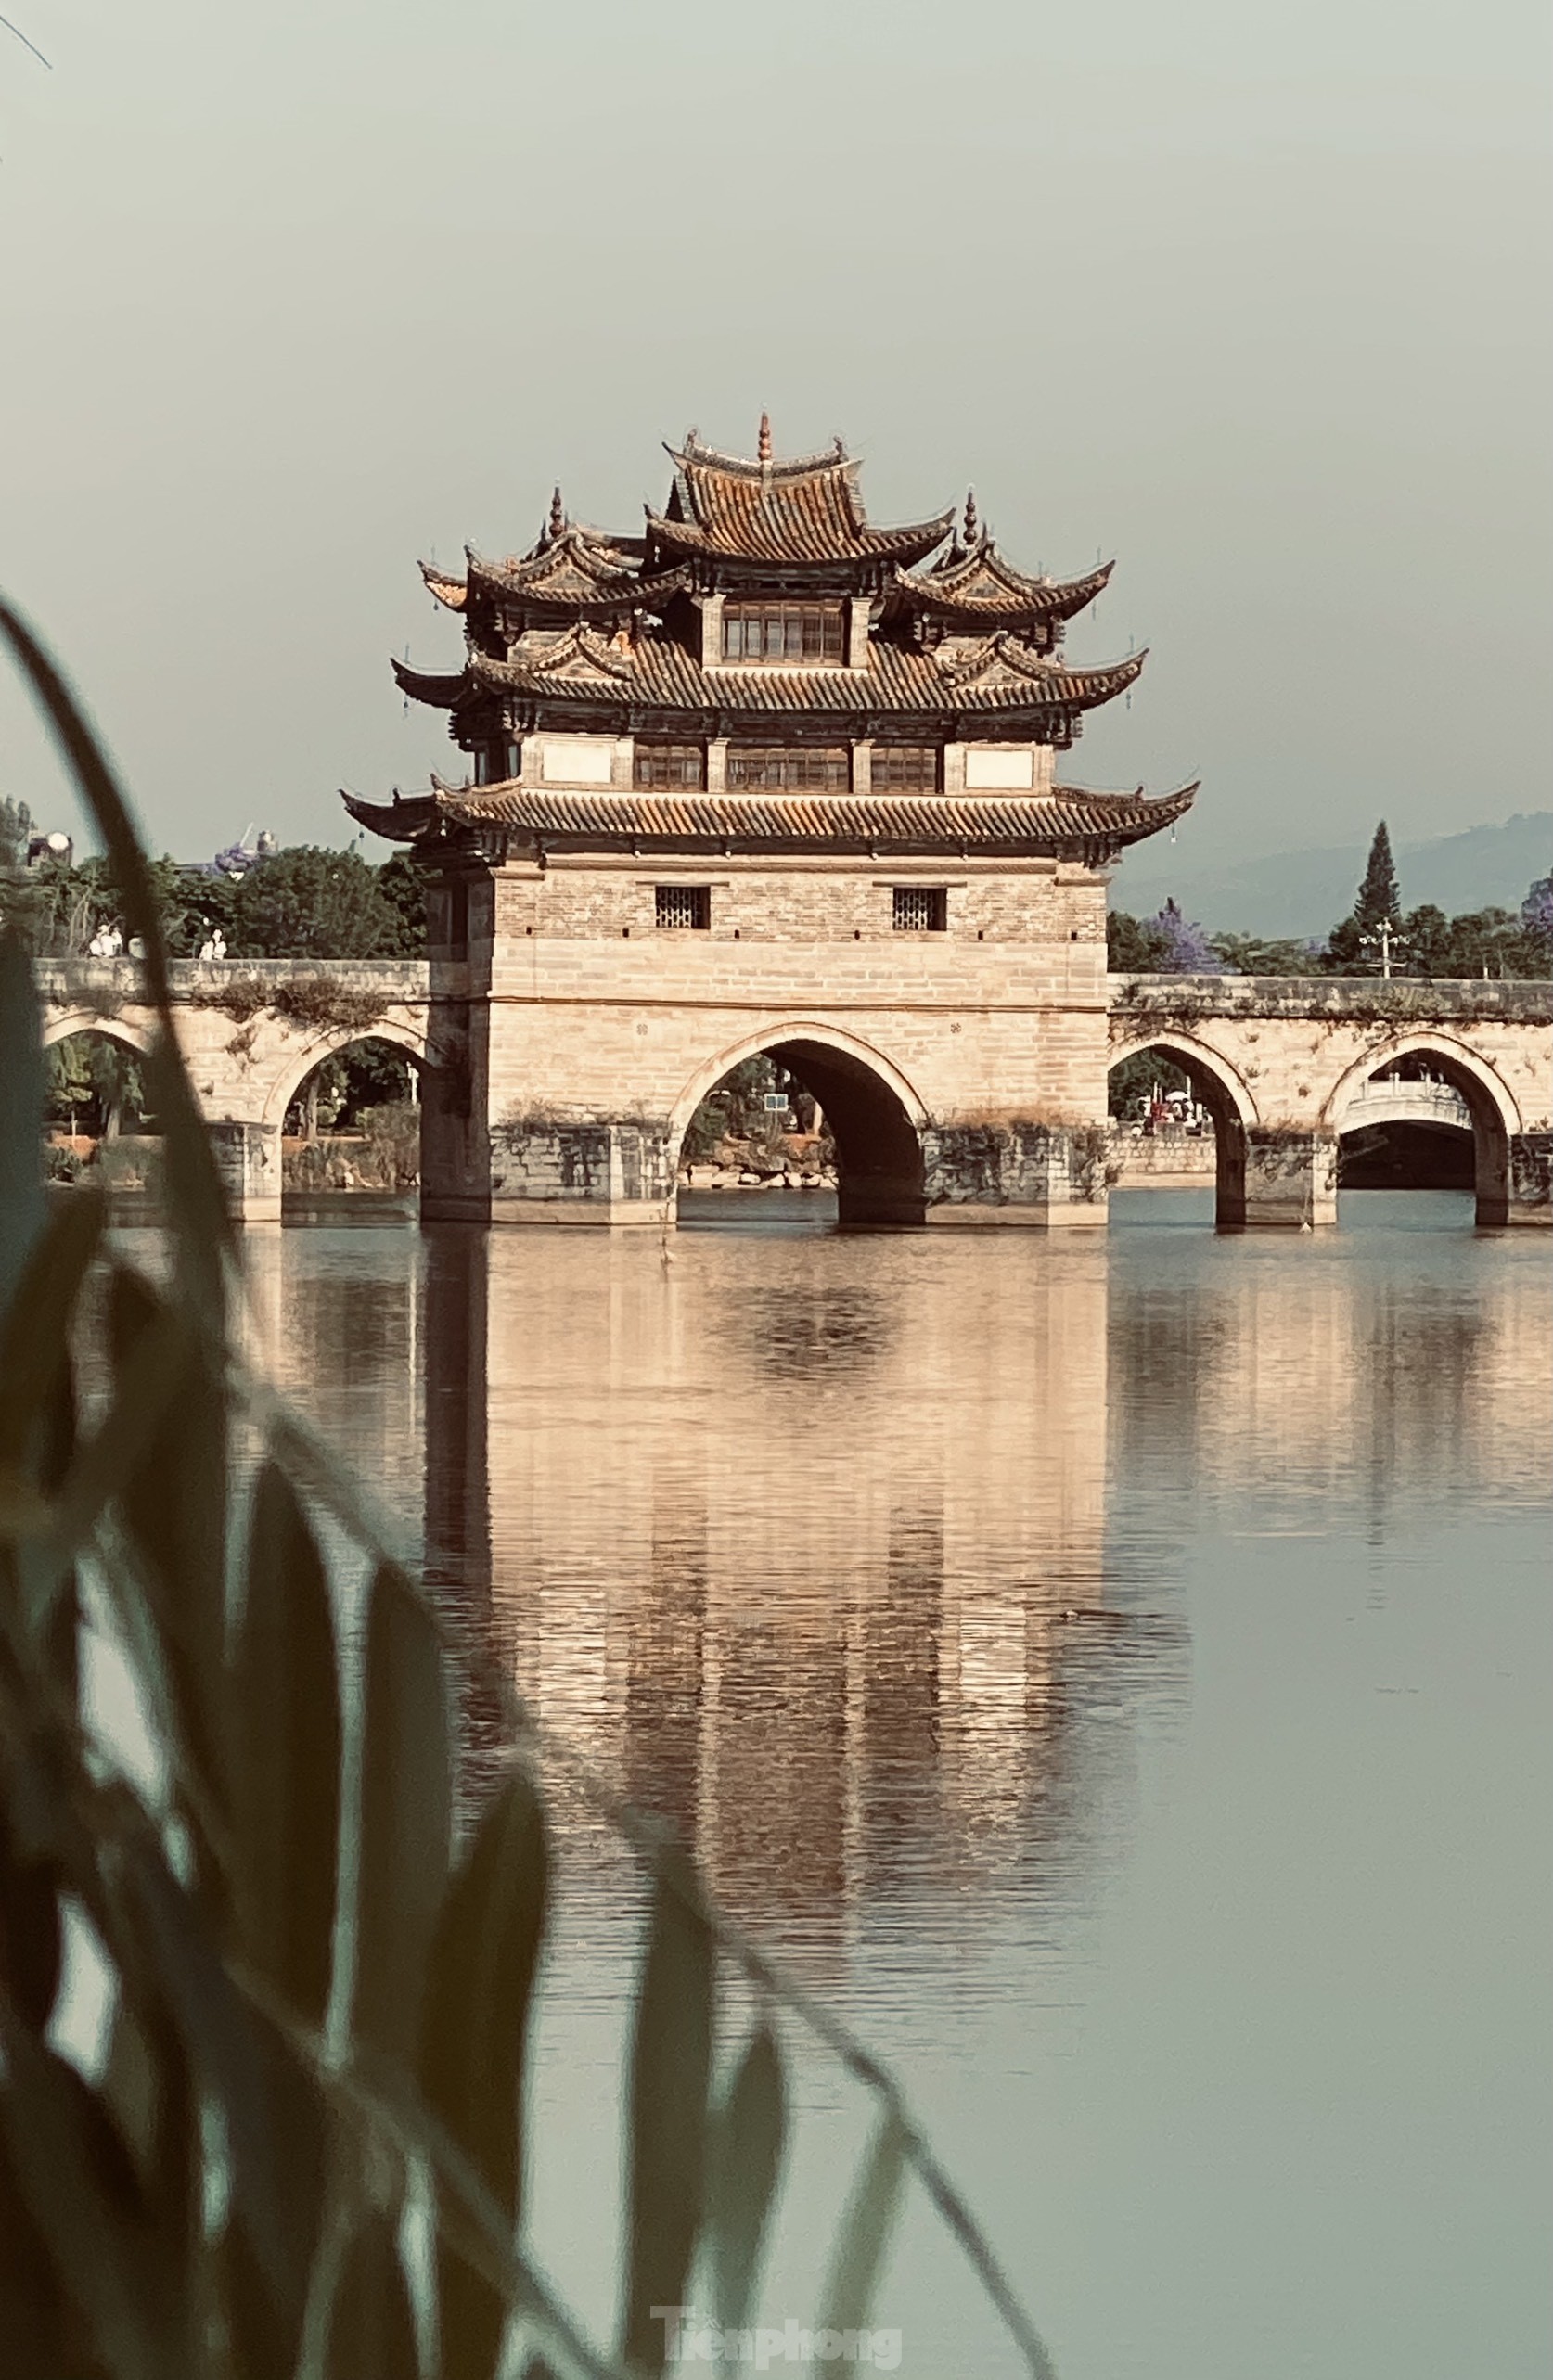 Chiêm ngưỡng vẻ đẹp kiến trúc của thành cổ Trung Quốc